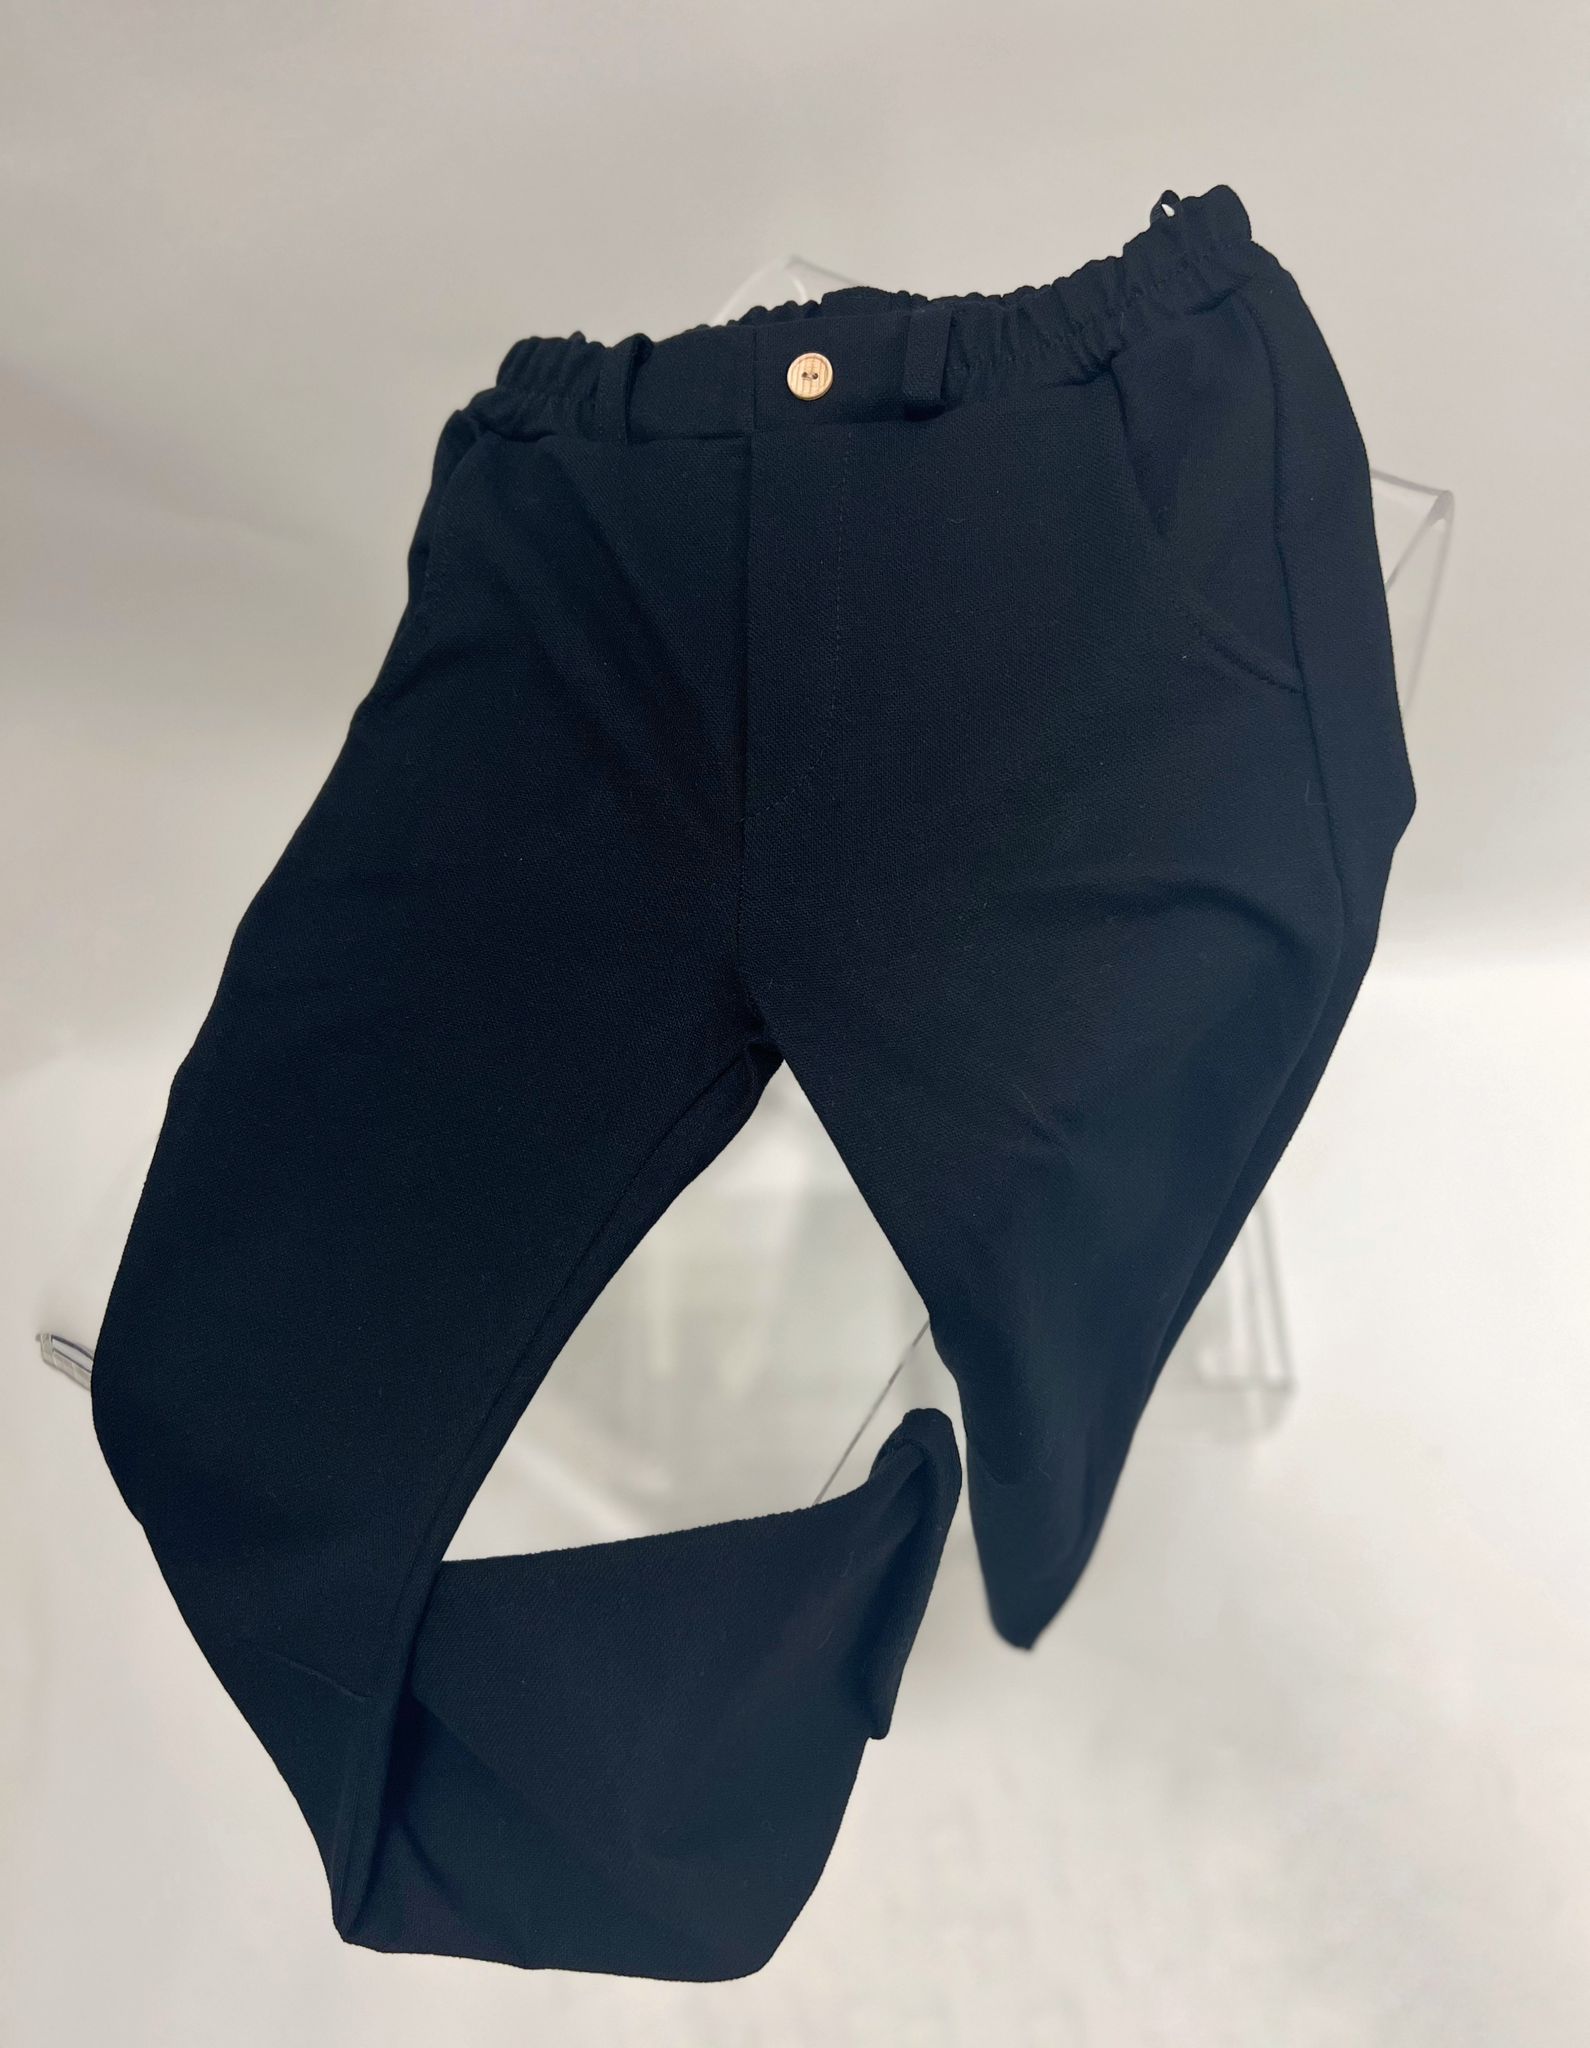 Štýlové chlapčenské nohavice, čierne (140,146,152)